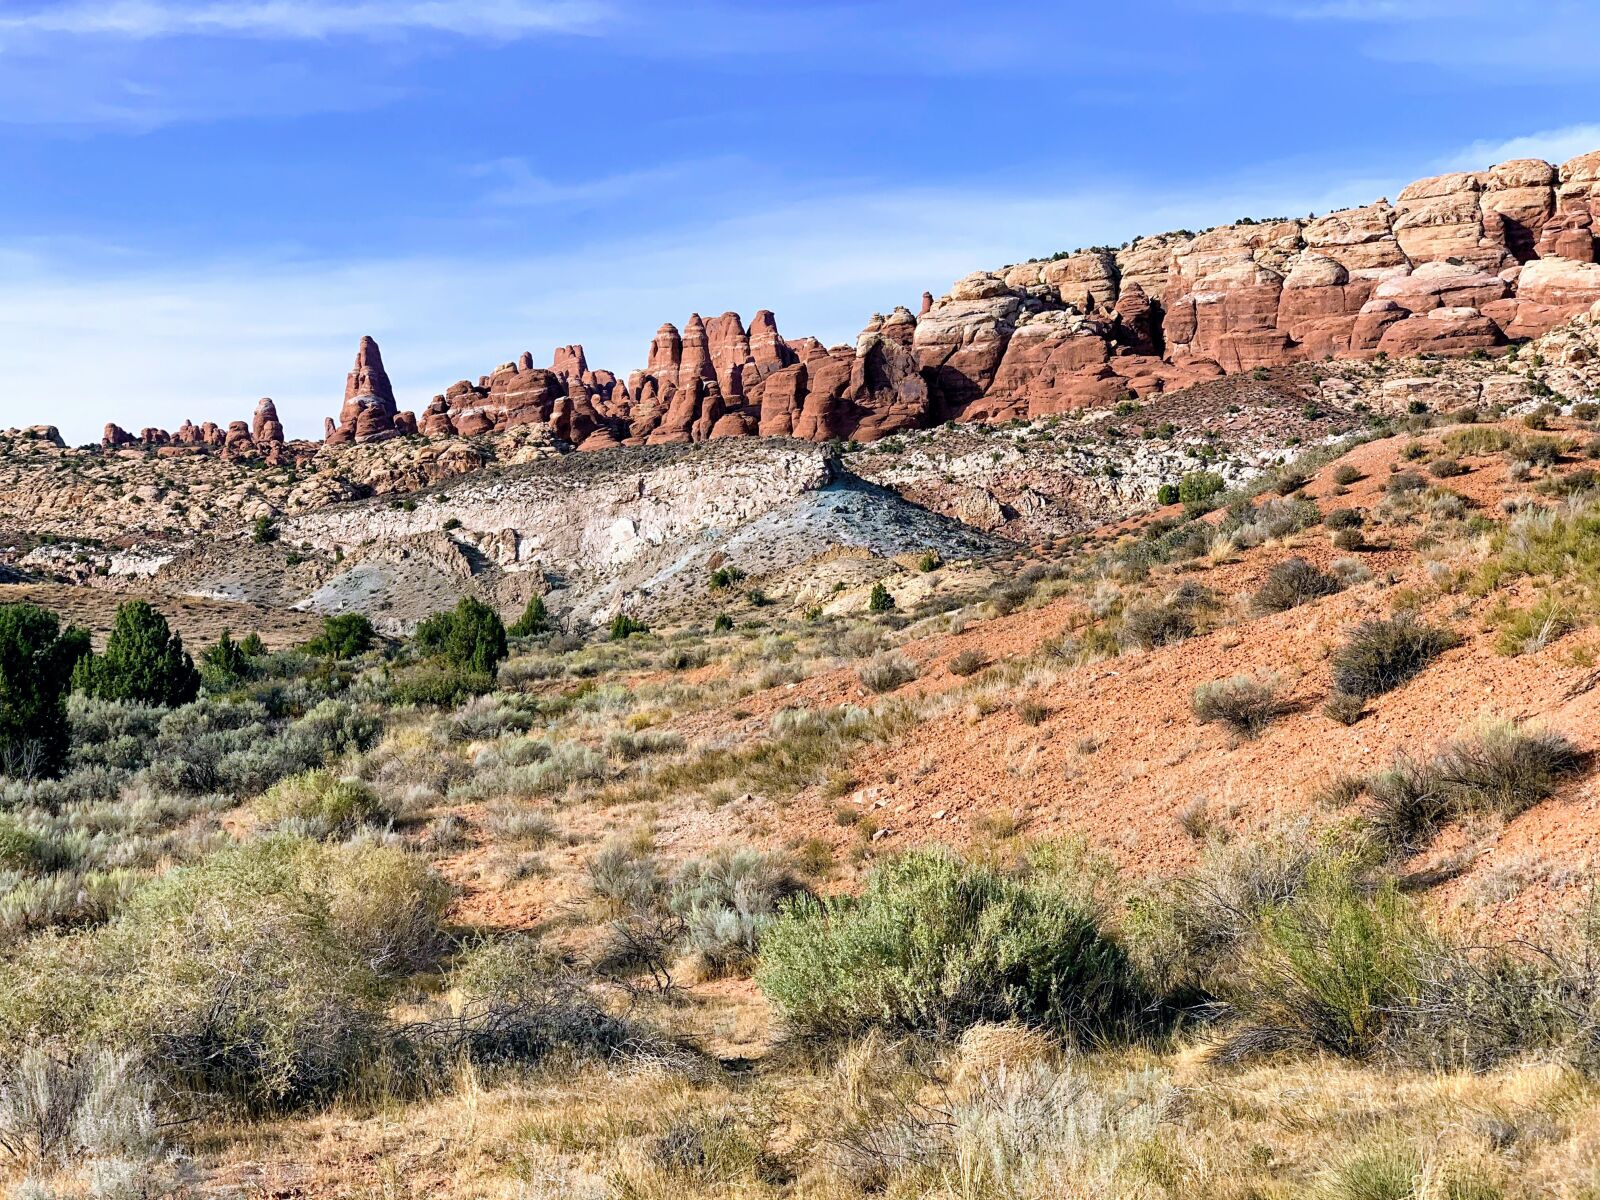 Apple iPhone XS sample photo. Utah, moab, landscape photography